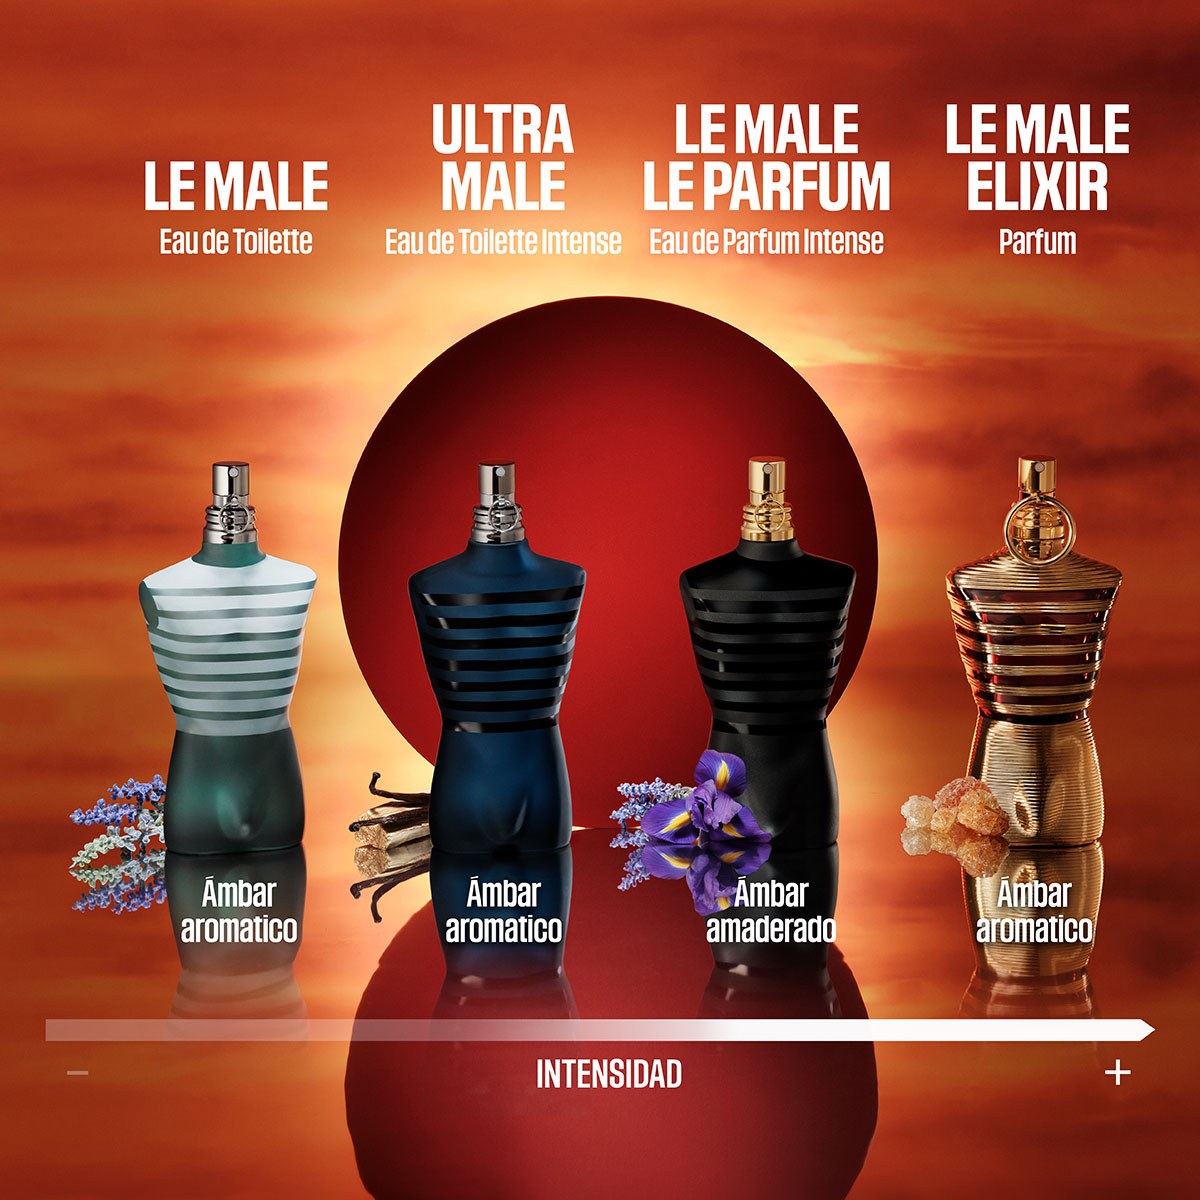 Le Male Elixir Parfum Perfume para Hombre